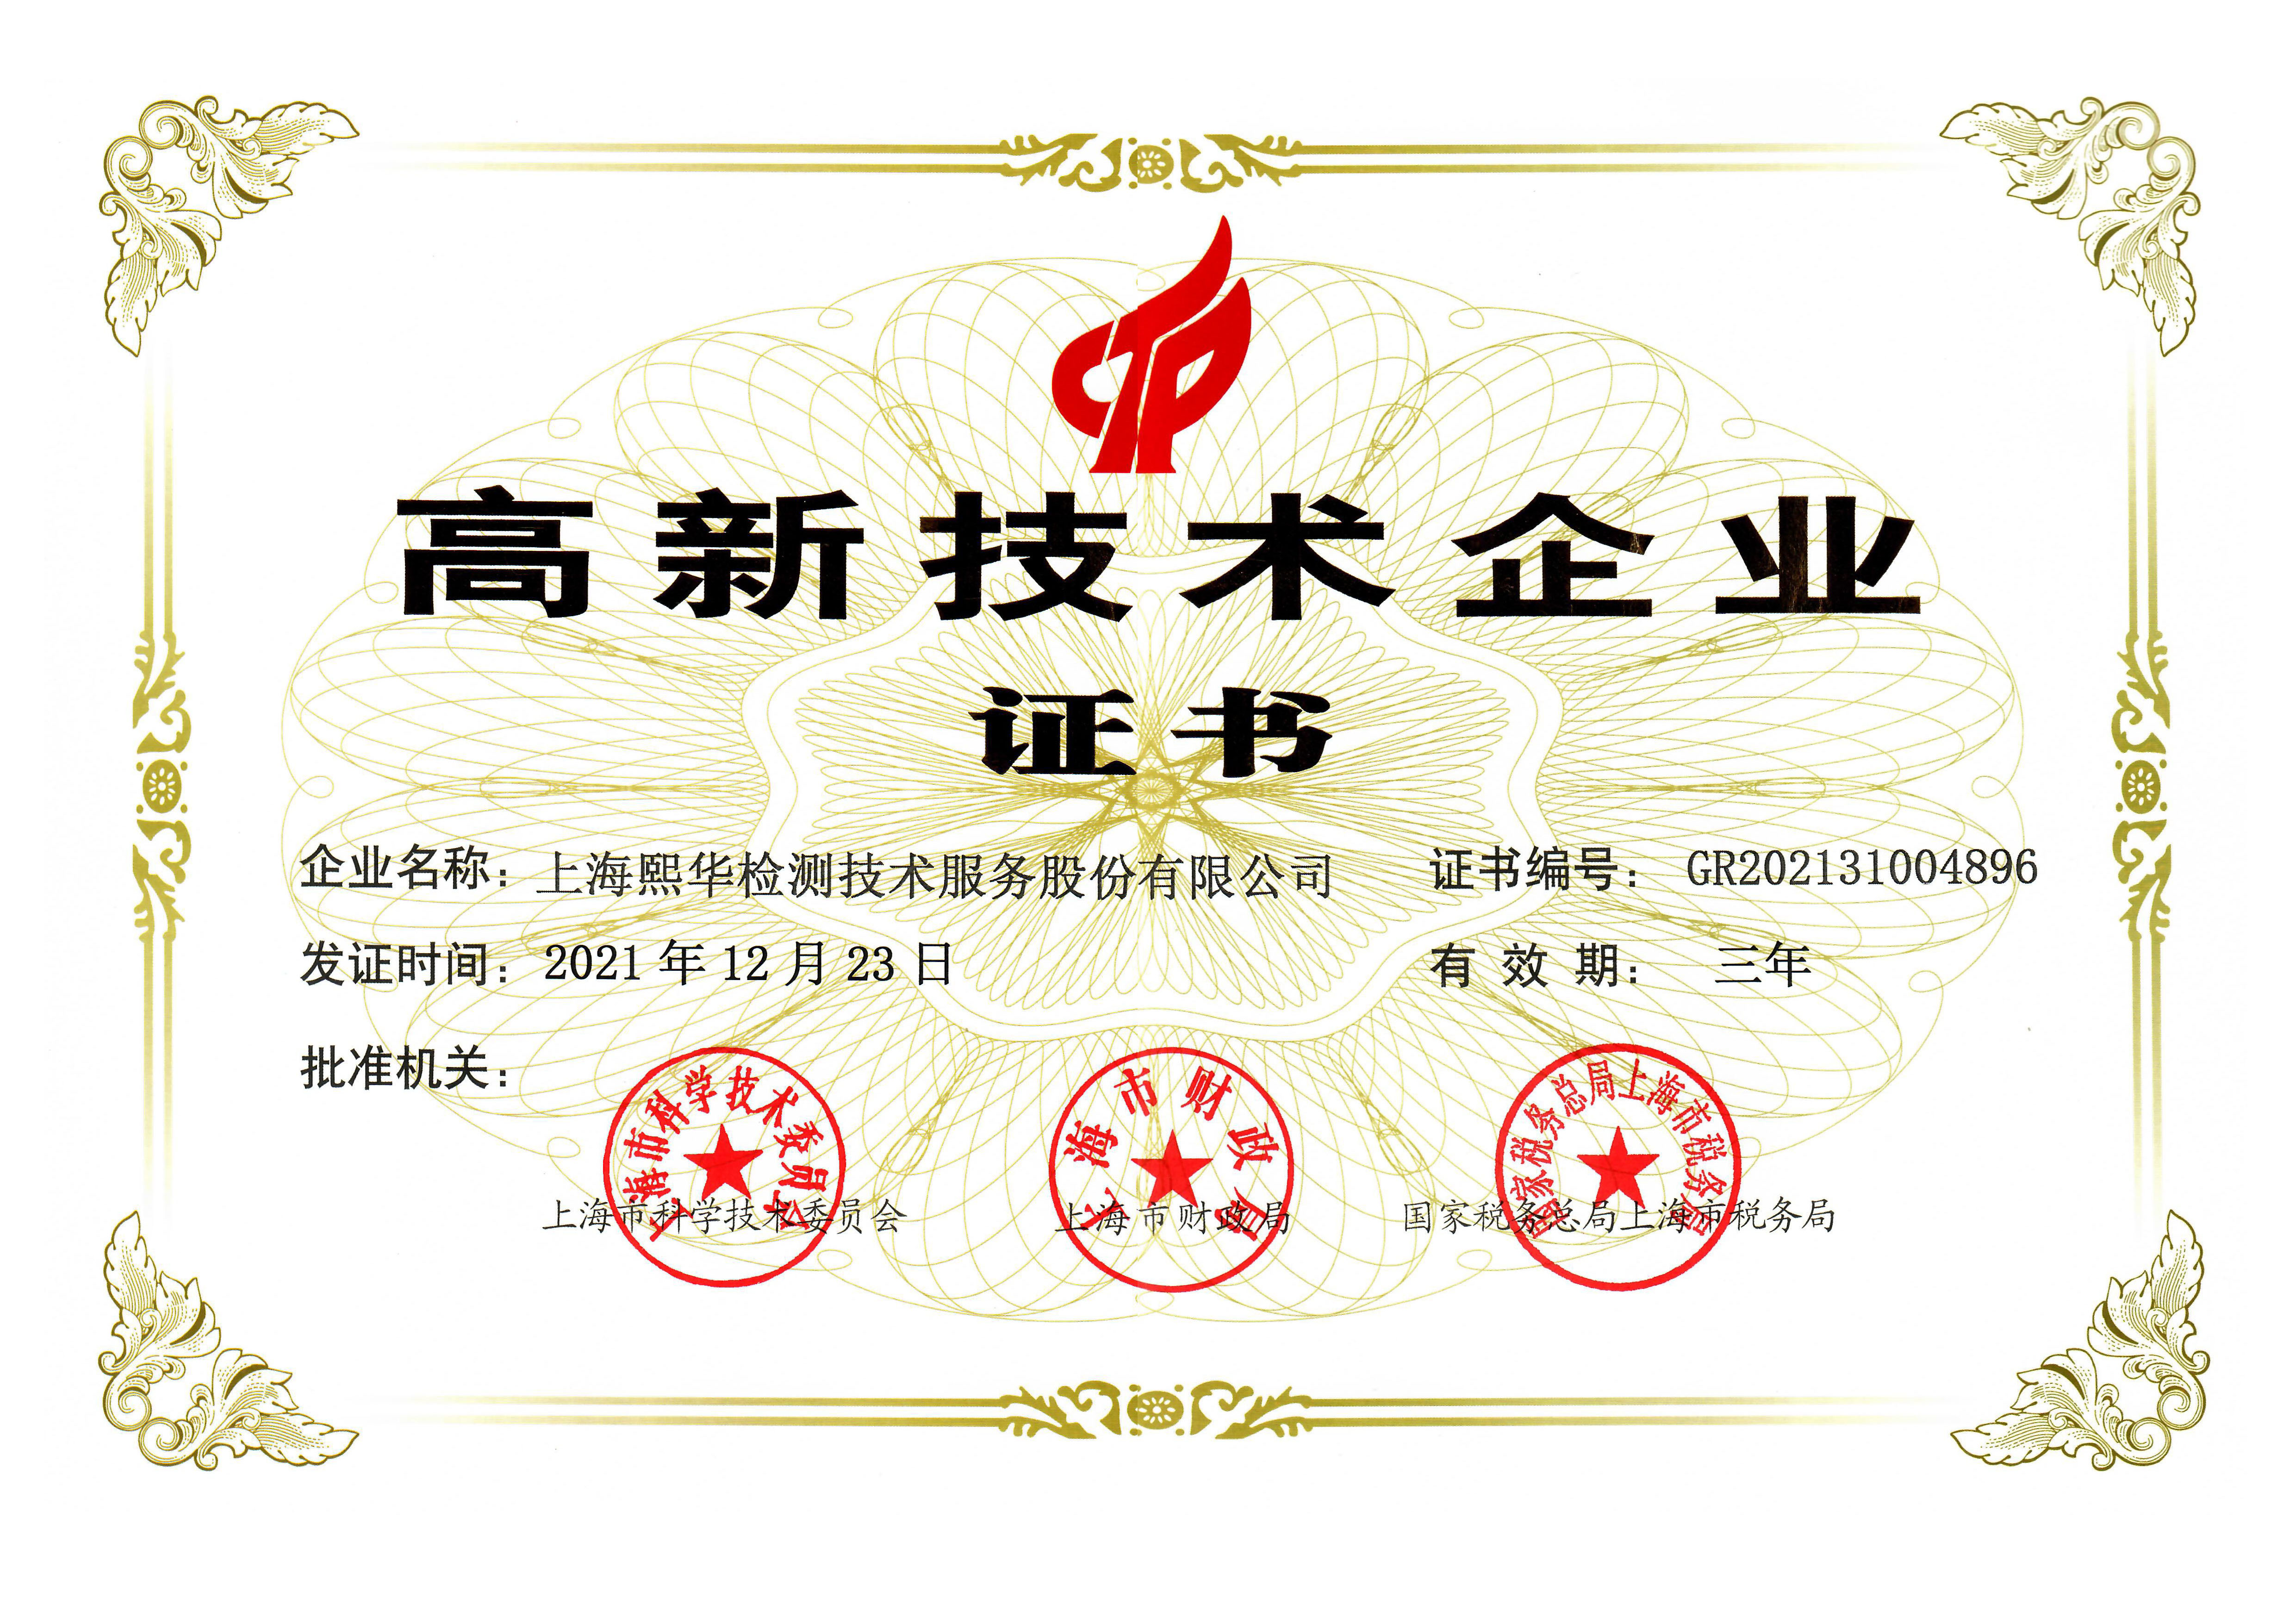  High-tech enterprise certificate